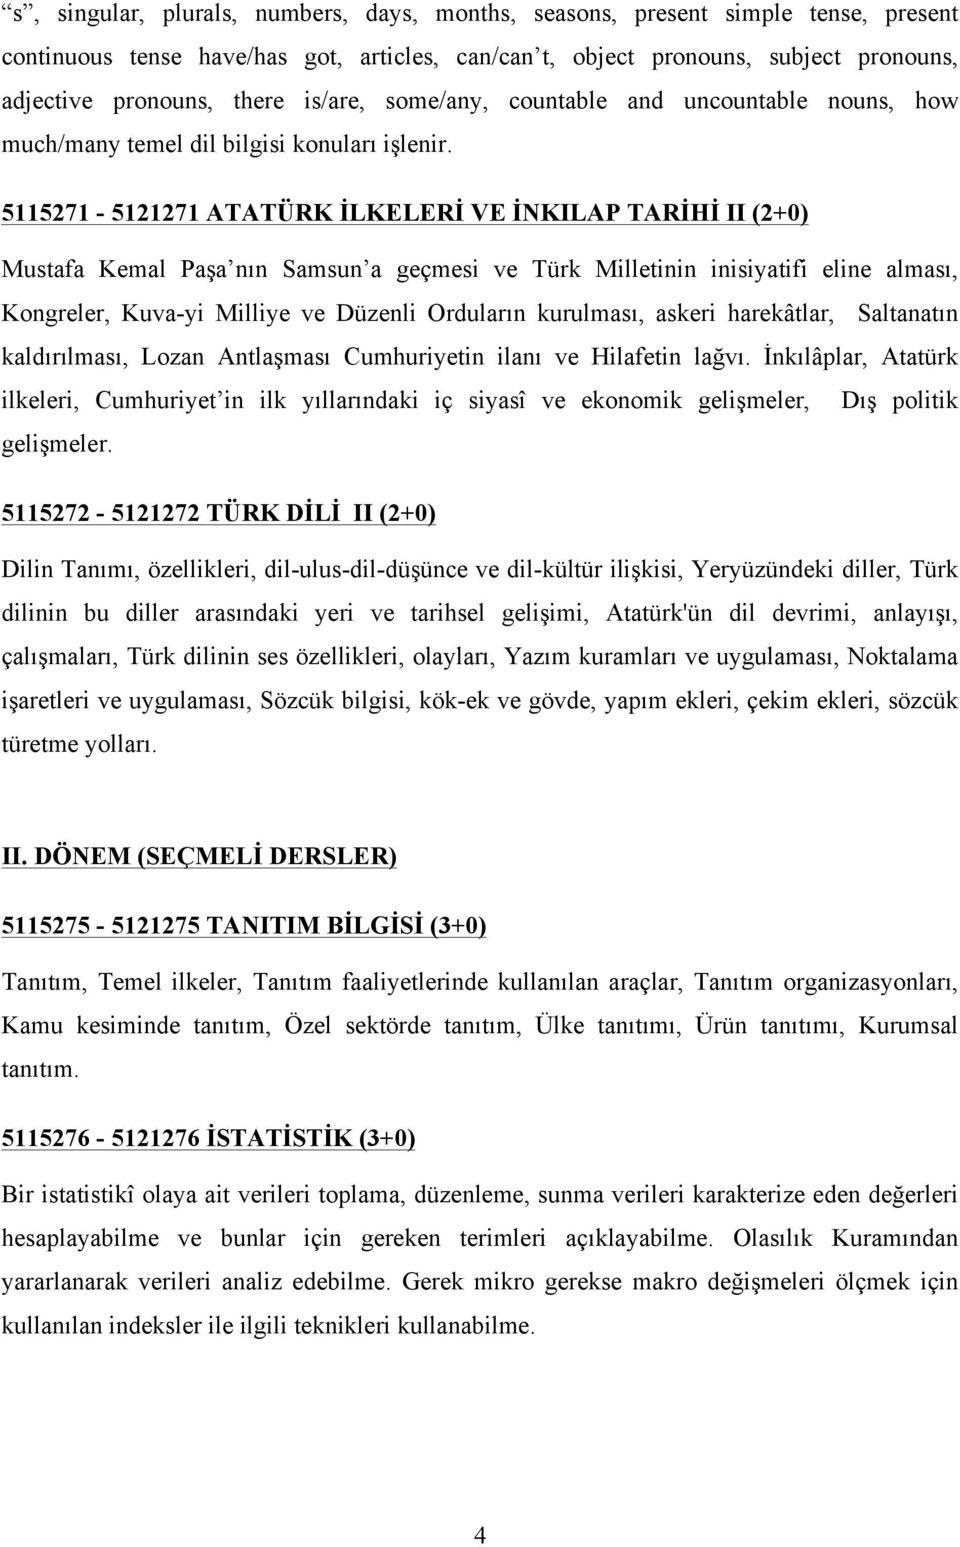 5115271-5121271 ATATÜRK İLKELERİ VE İNKILAP TARİHİ II (2+0) Mustafa Kemal Paşa nın Samsun a geçmesi ve Türk Milletinin inisiyatifi eline alması, Kongreler, Kuva-yi Milliye ve Düzenli Orduların